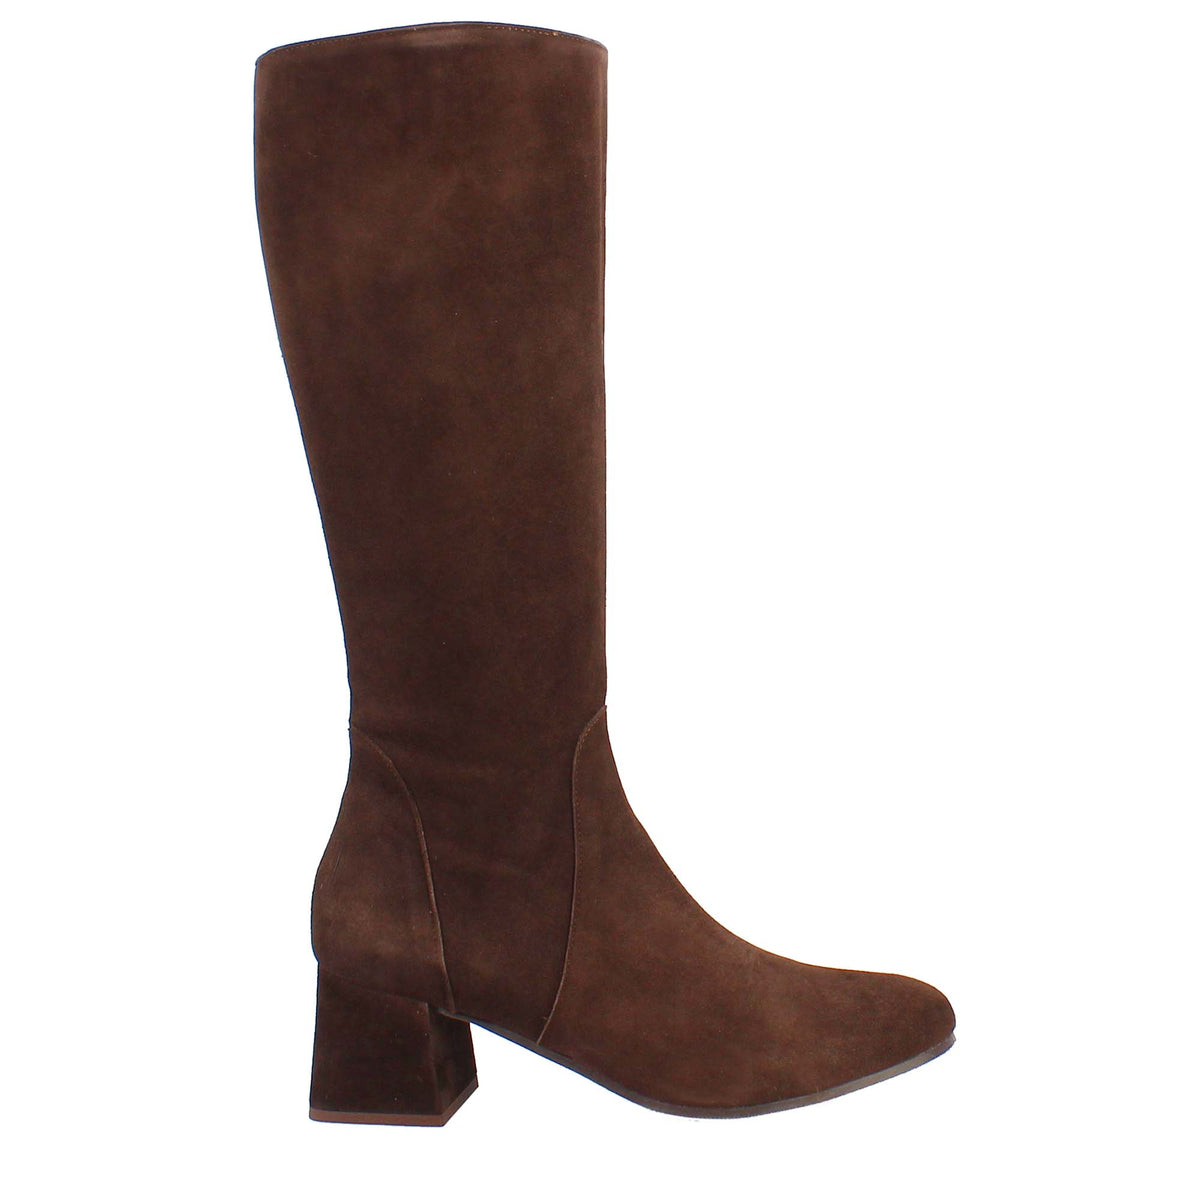 Dark brown suede women's high winter boots 